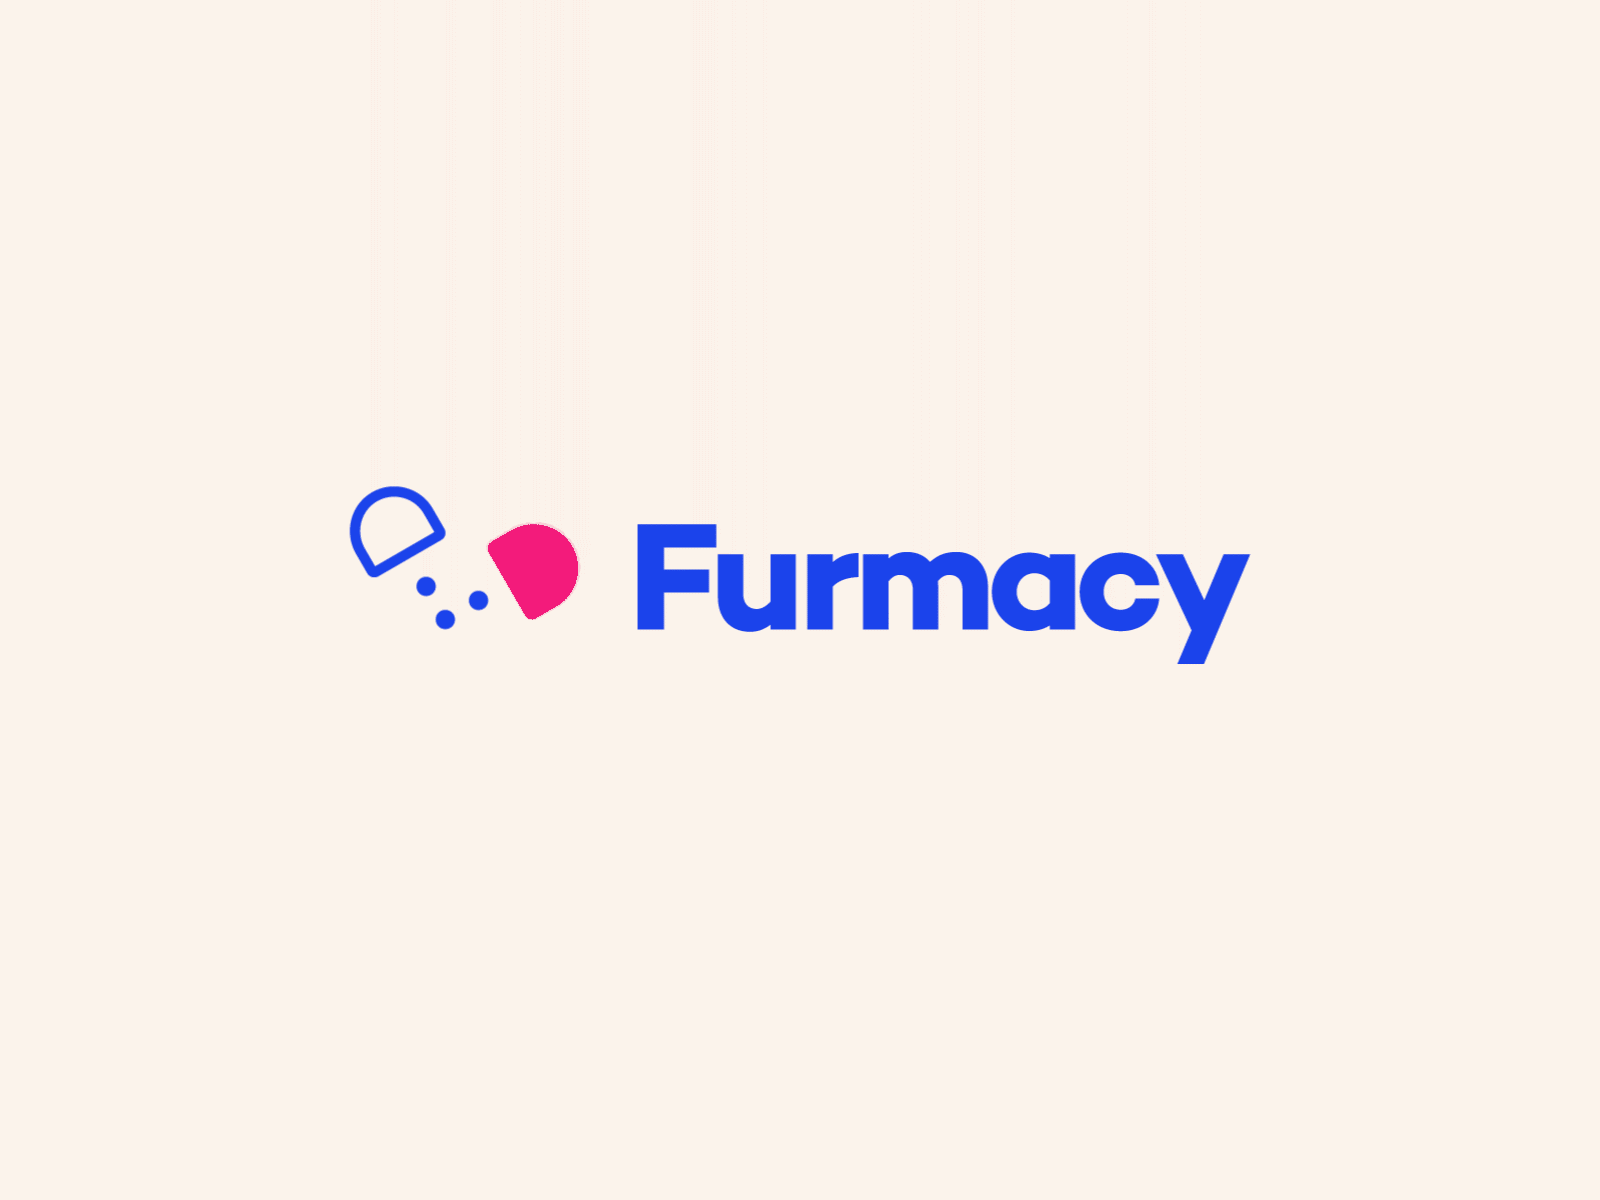 Furmacy logo animation